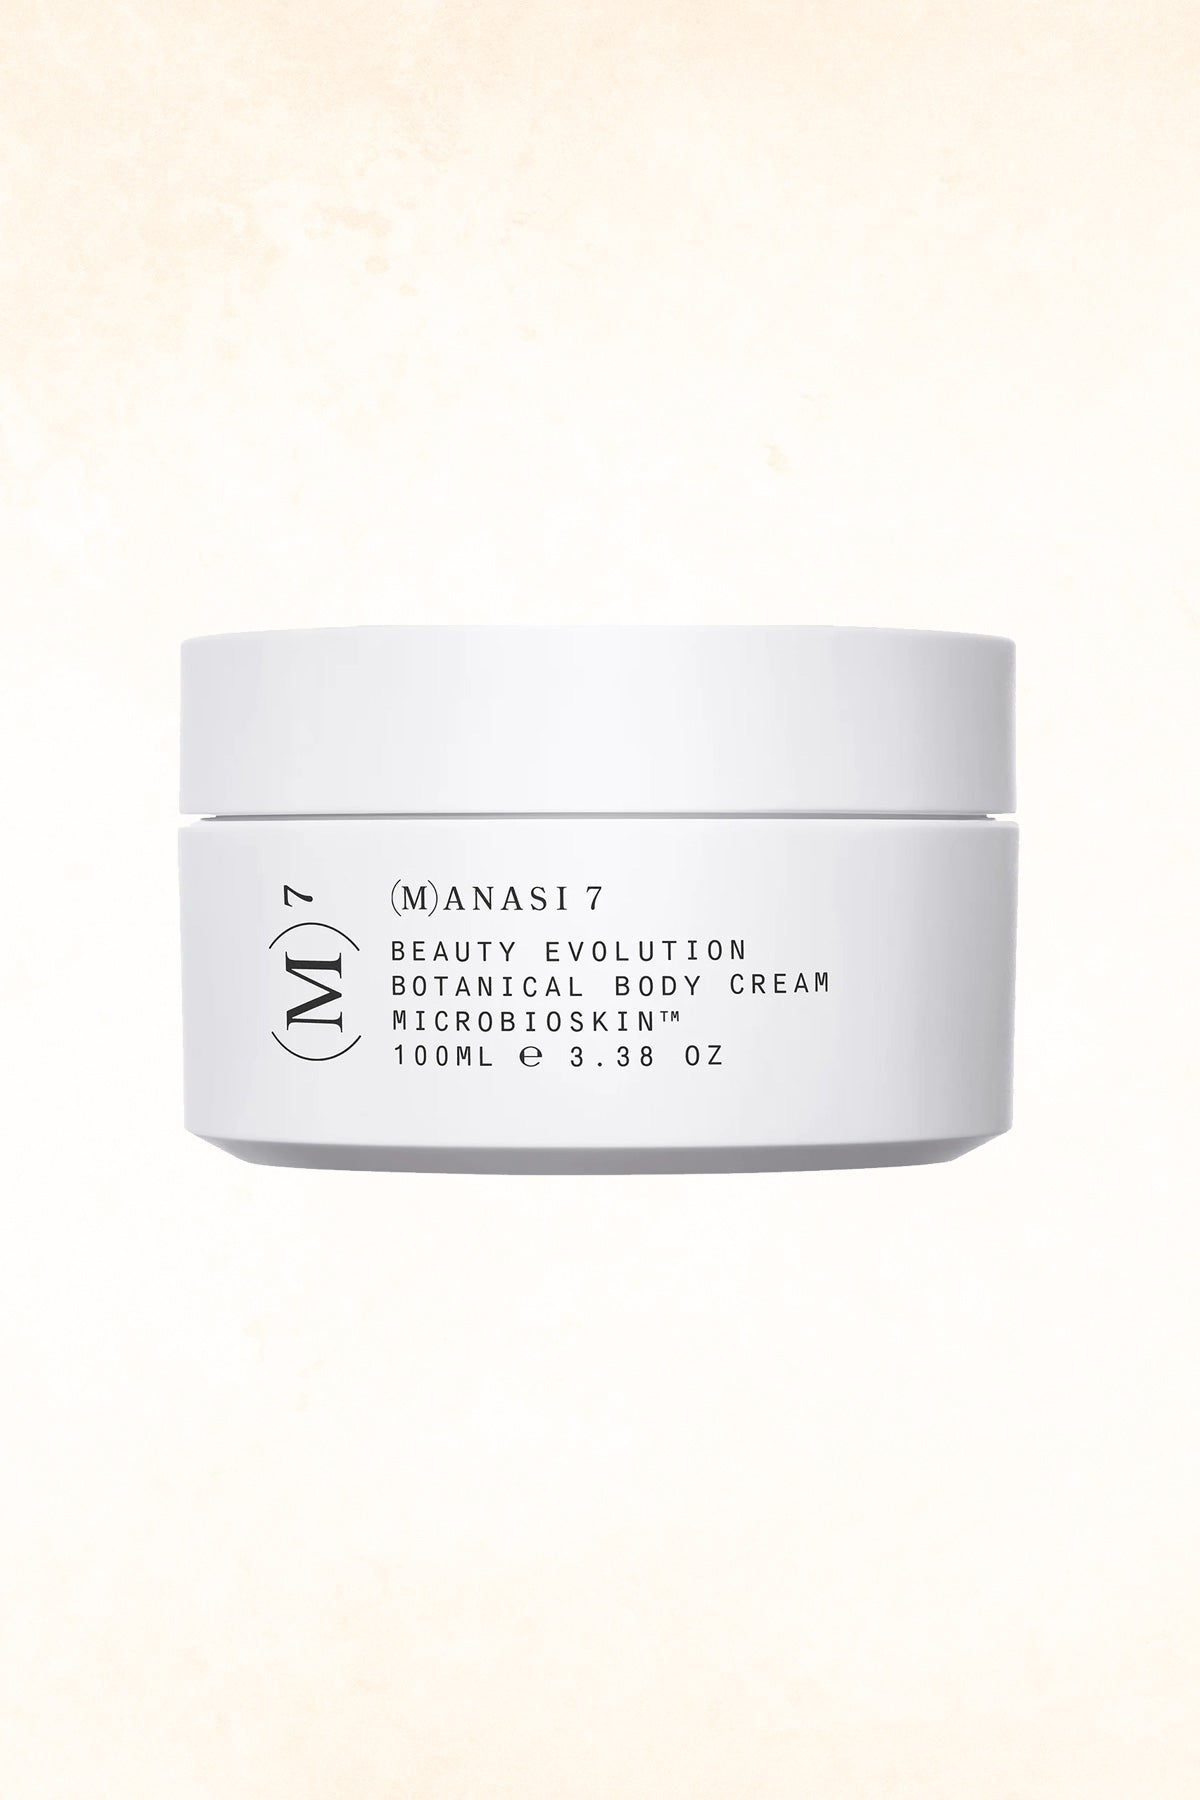 (M)ANASI 7 - Botanical Body Cream